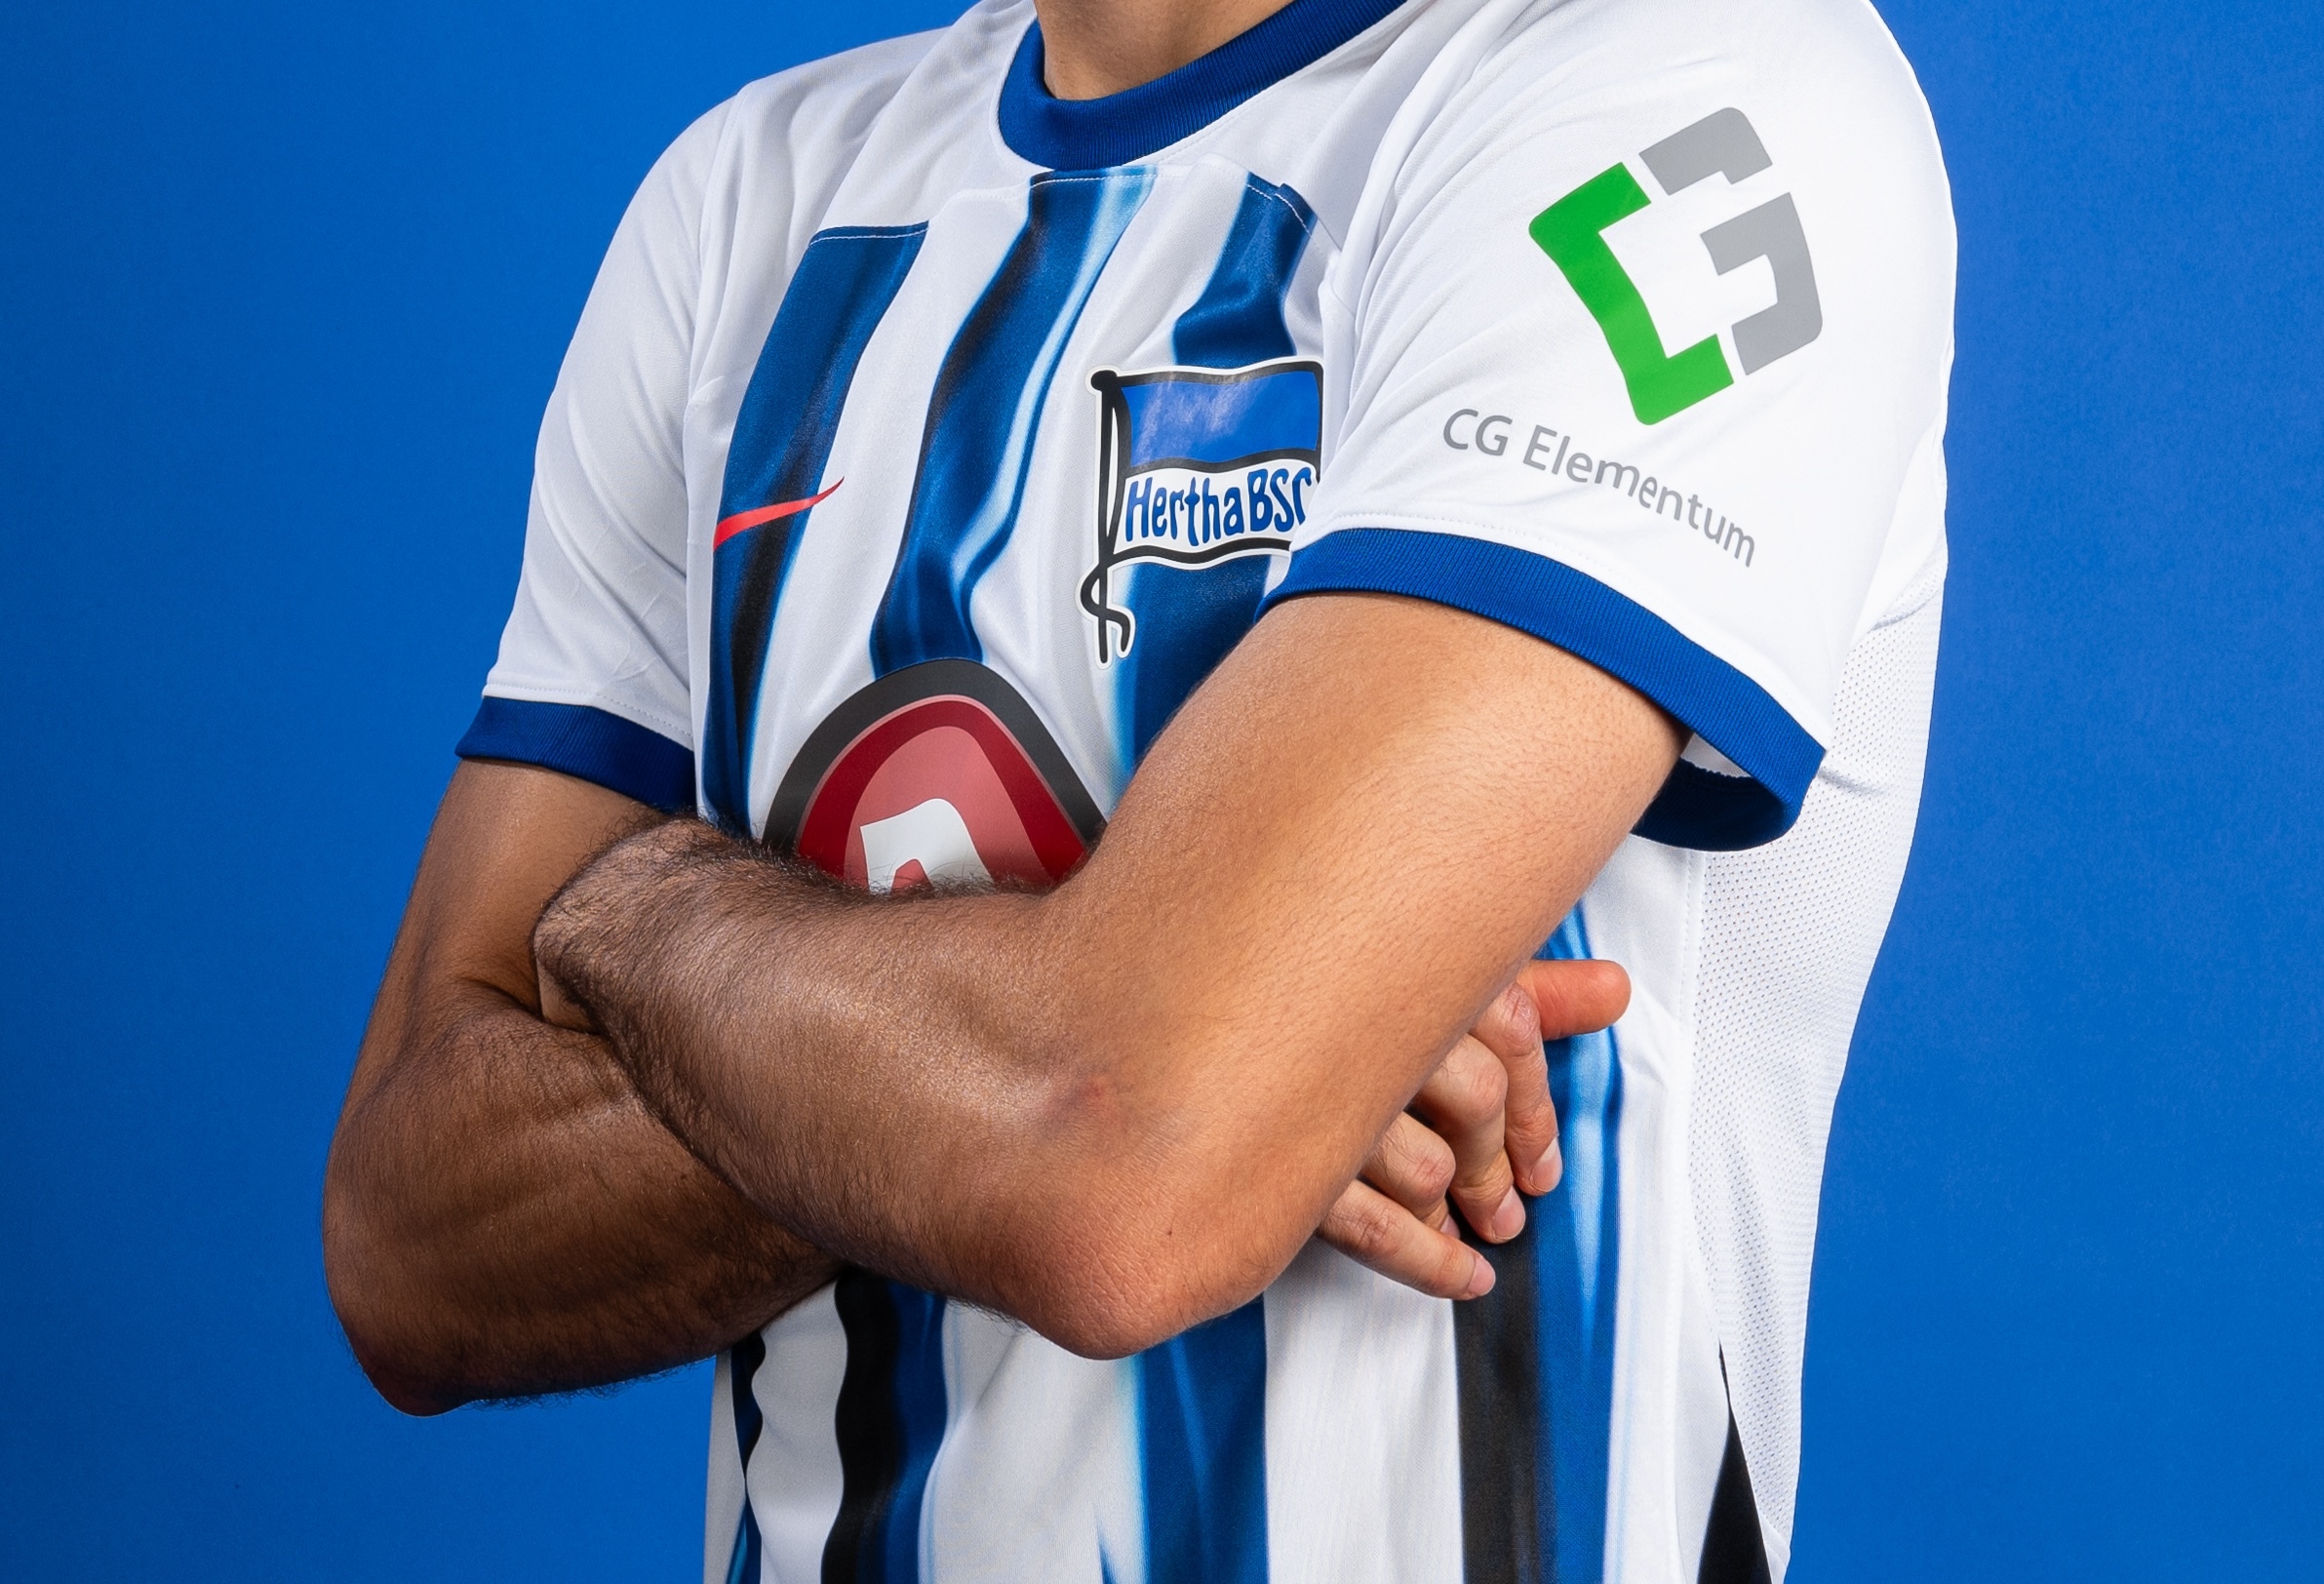 CG Elementum is Hertha's sleeve sponsor.